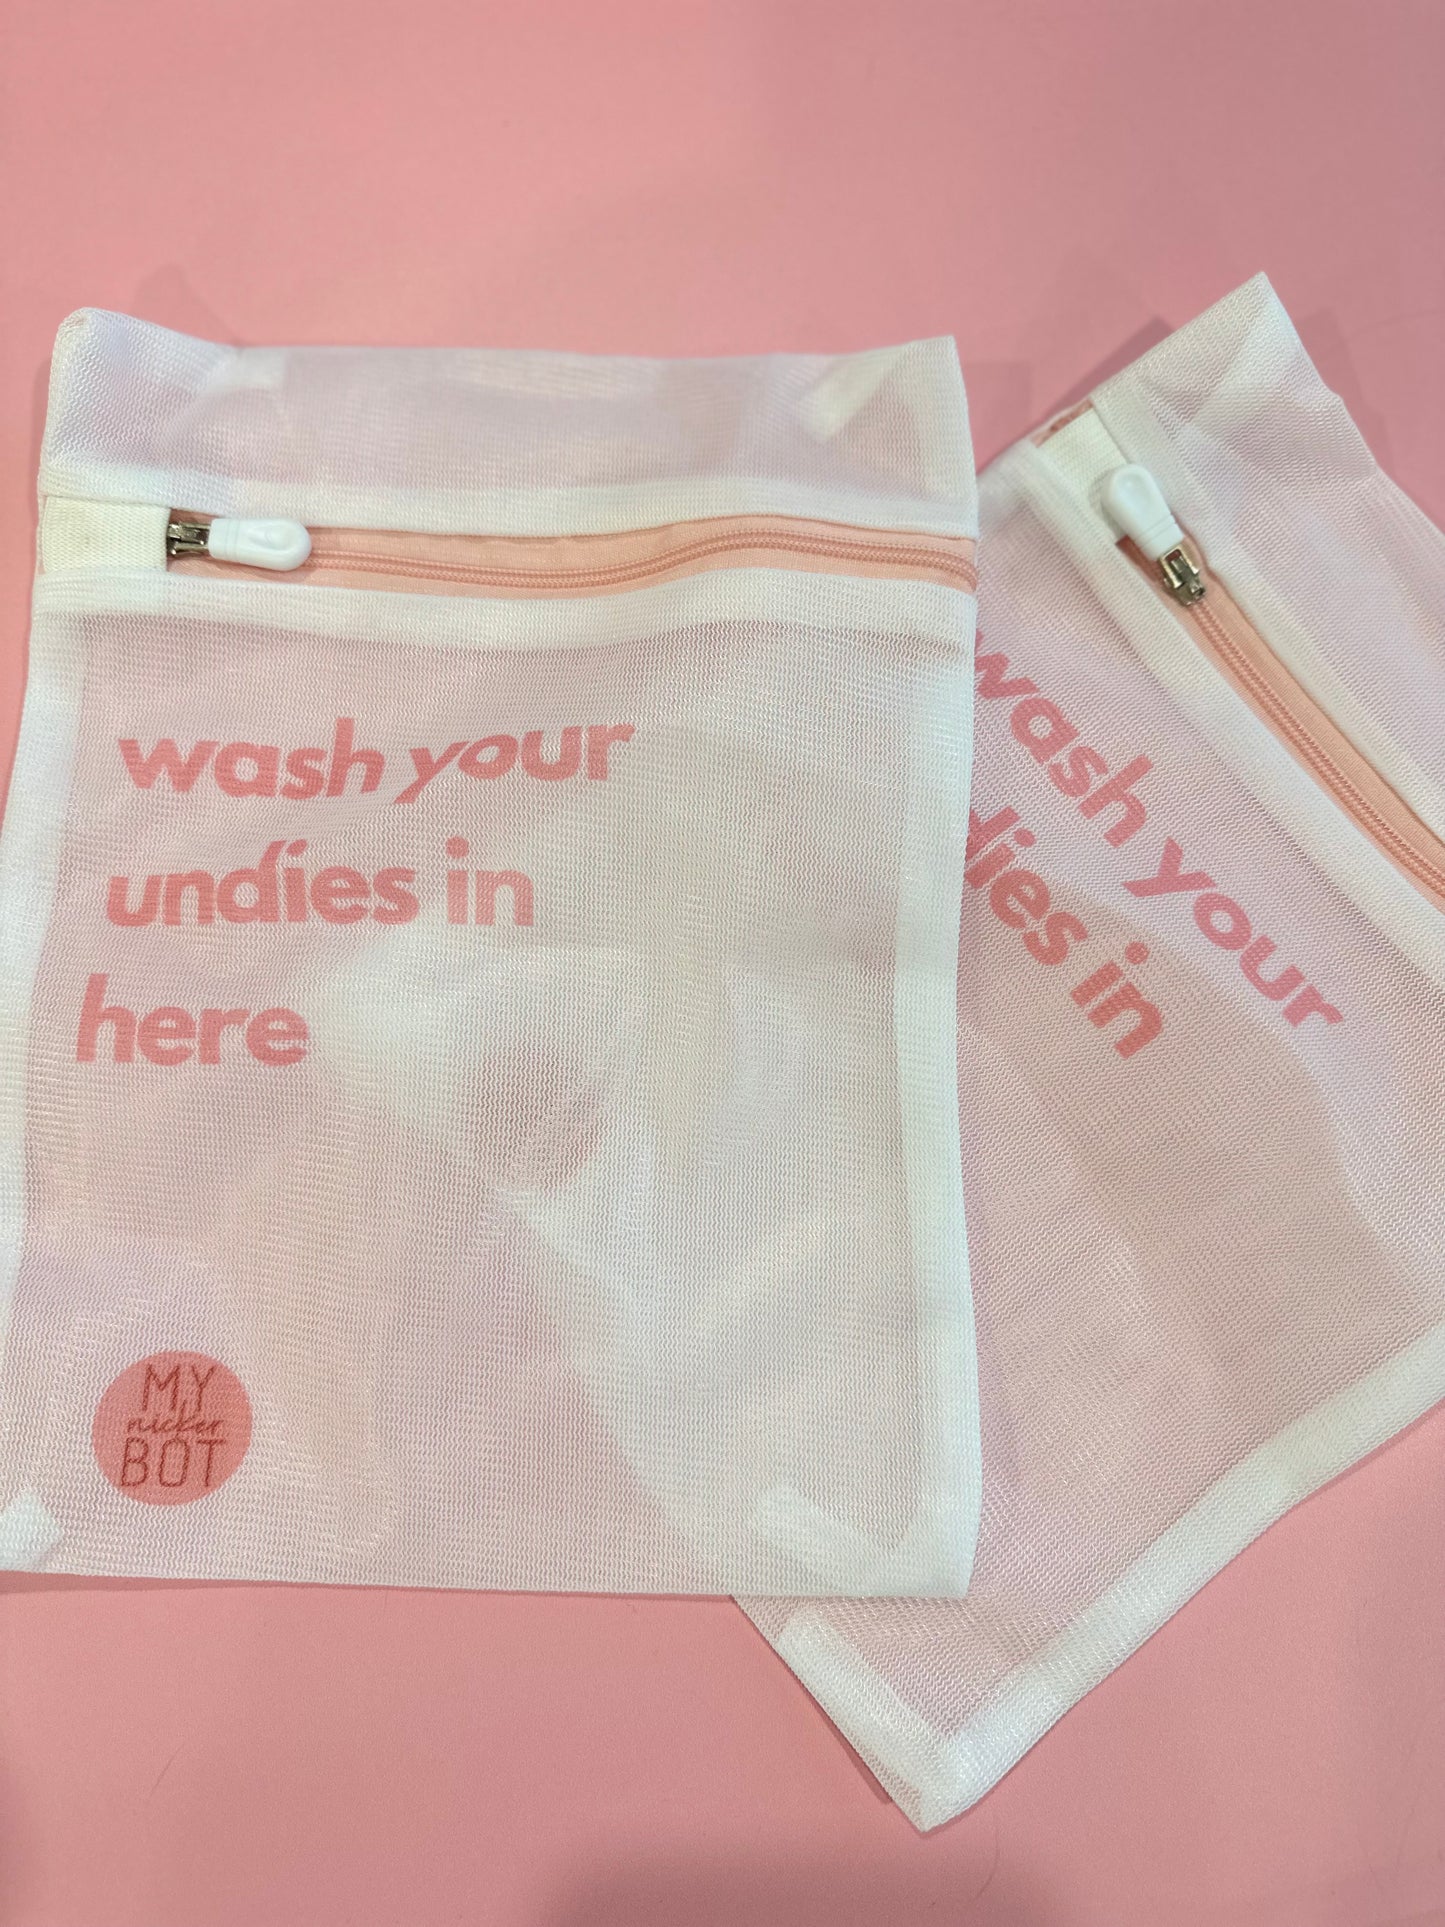 Period underwear wash bag